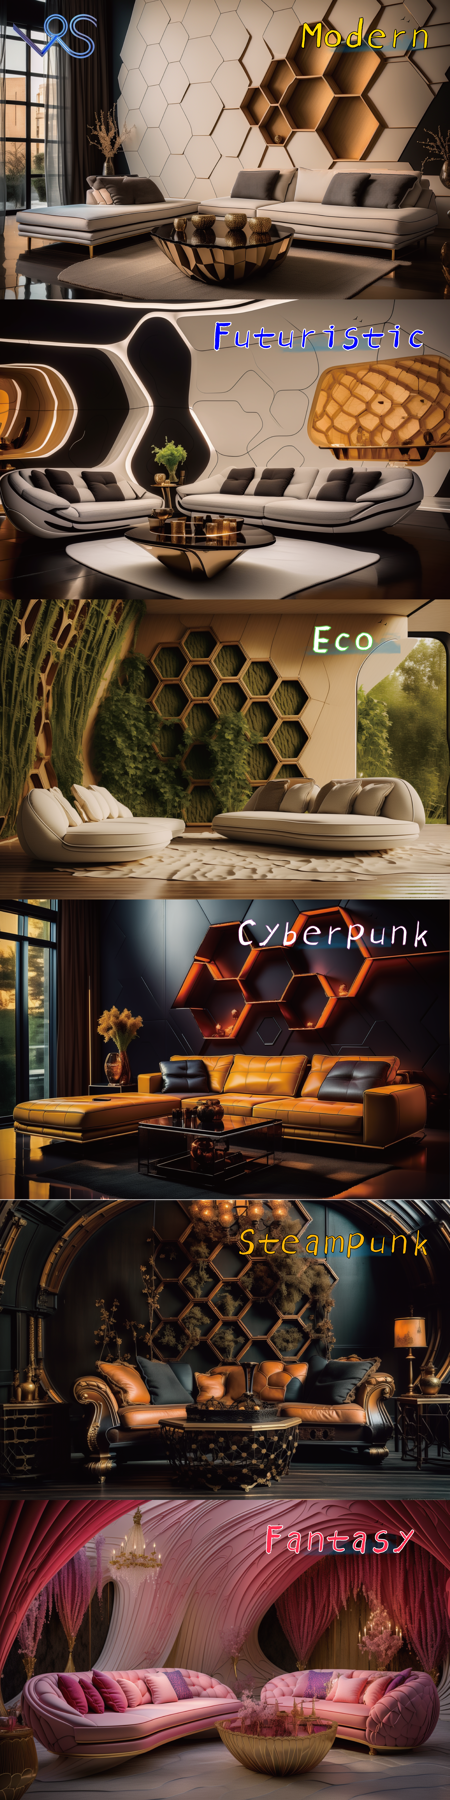 modern futuristic eco cyberpunk steampunk fantasy xs-hive-design